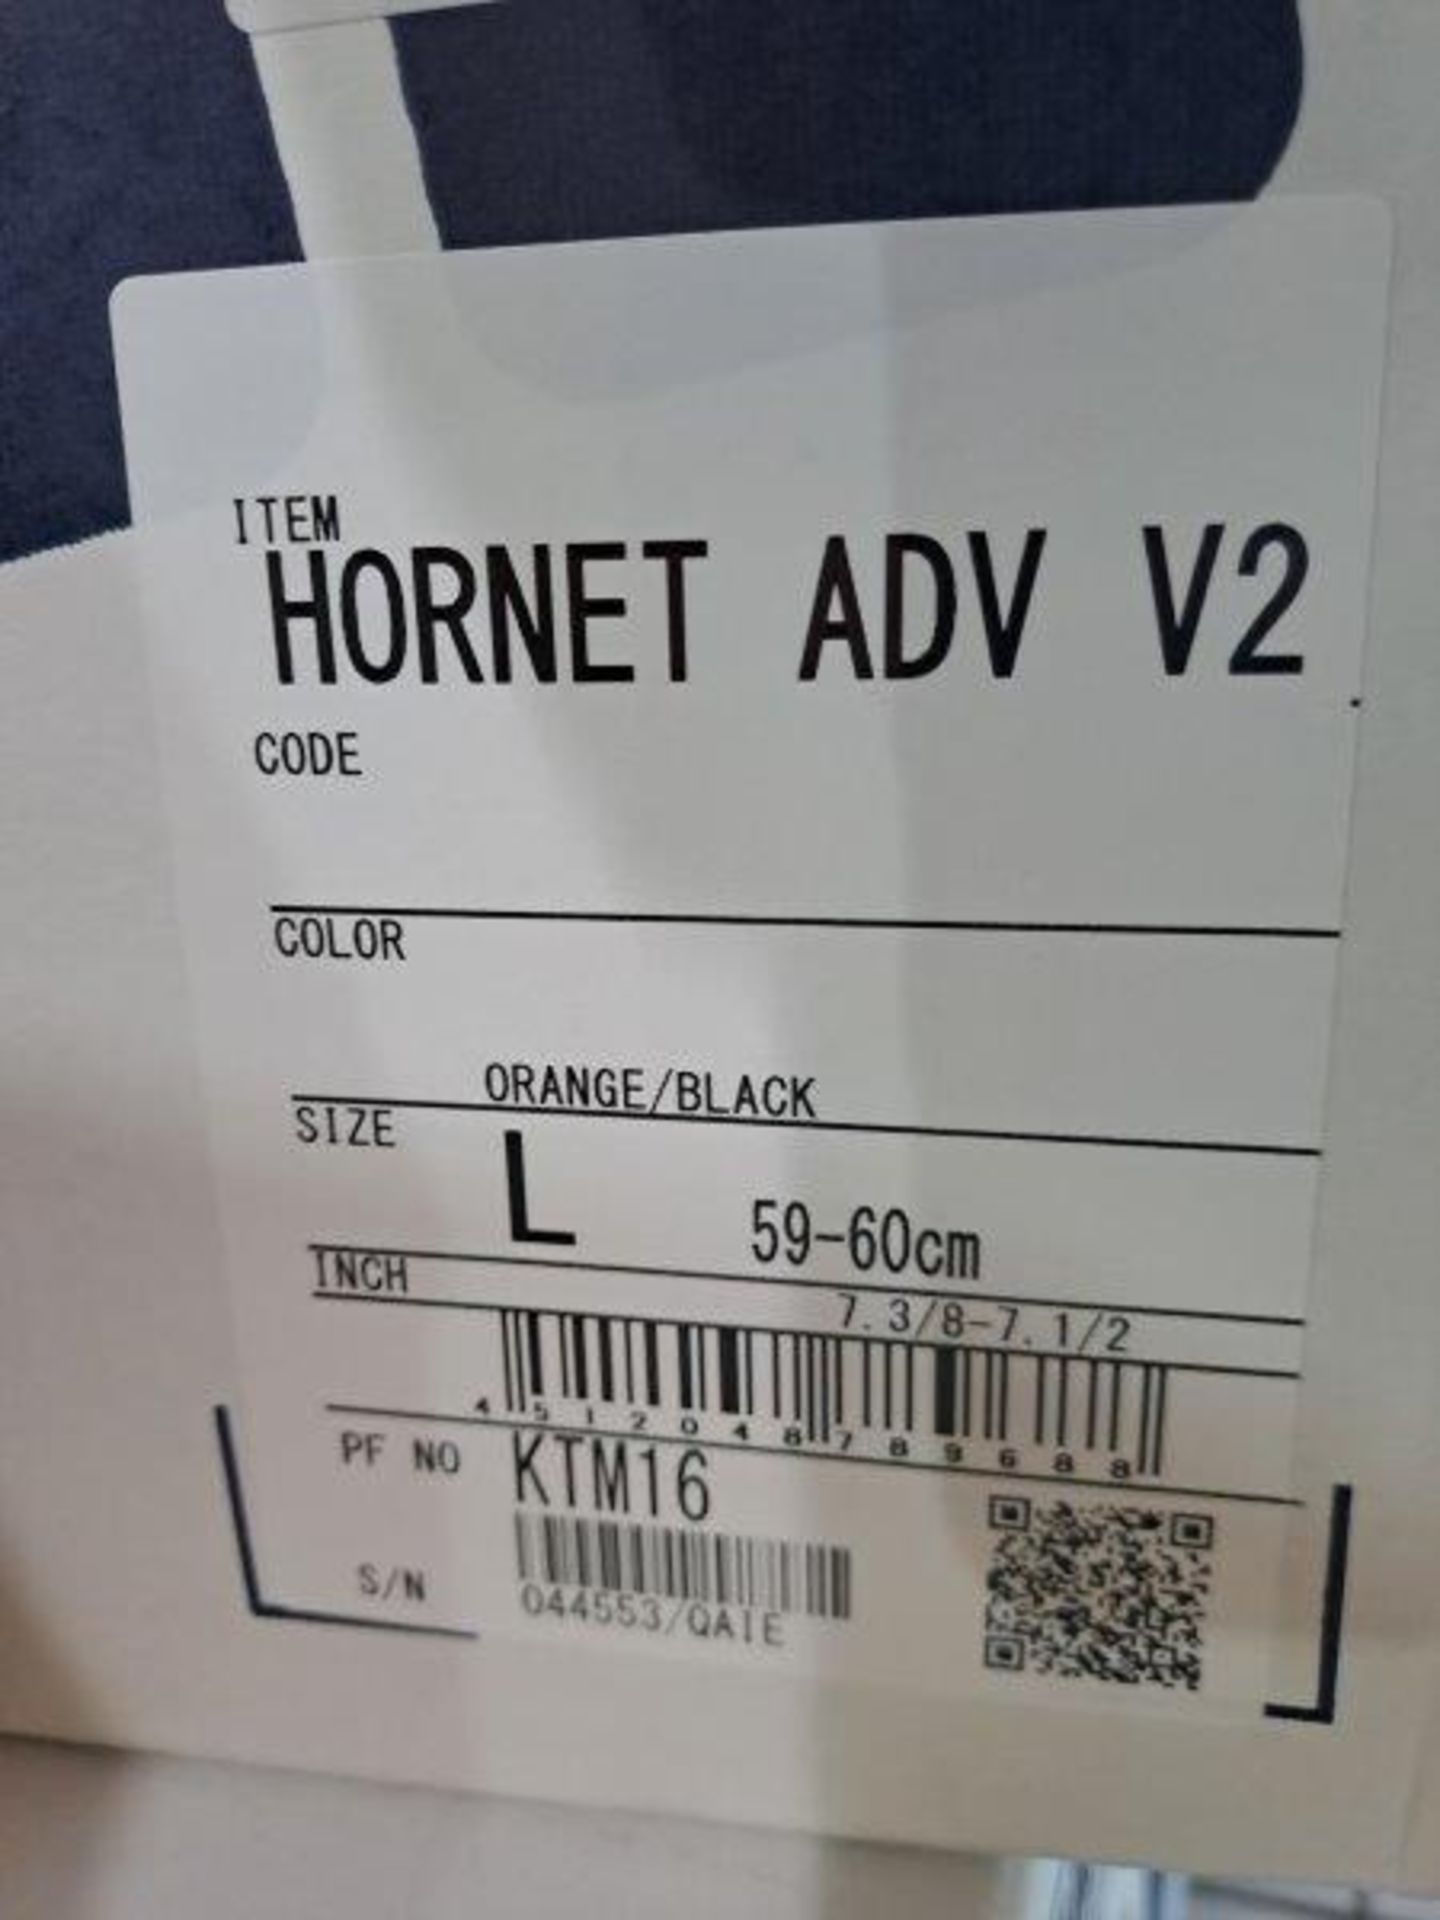 Shoei KTM Hornet ADV v2 L59-60 Motorbike Helmet - Image 4 of 6